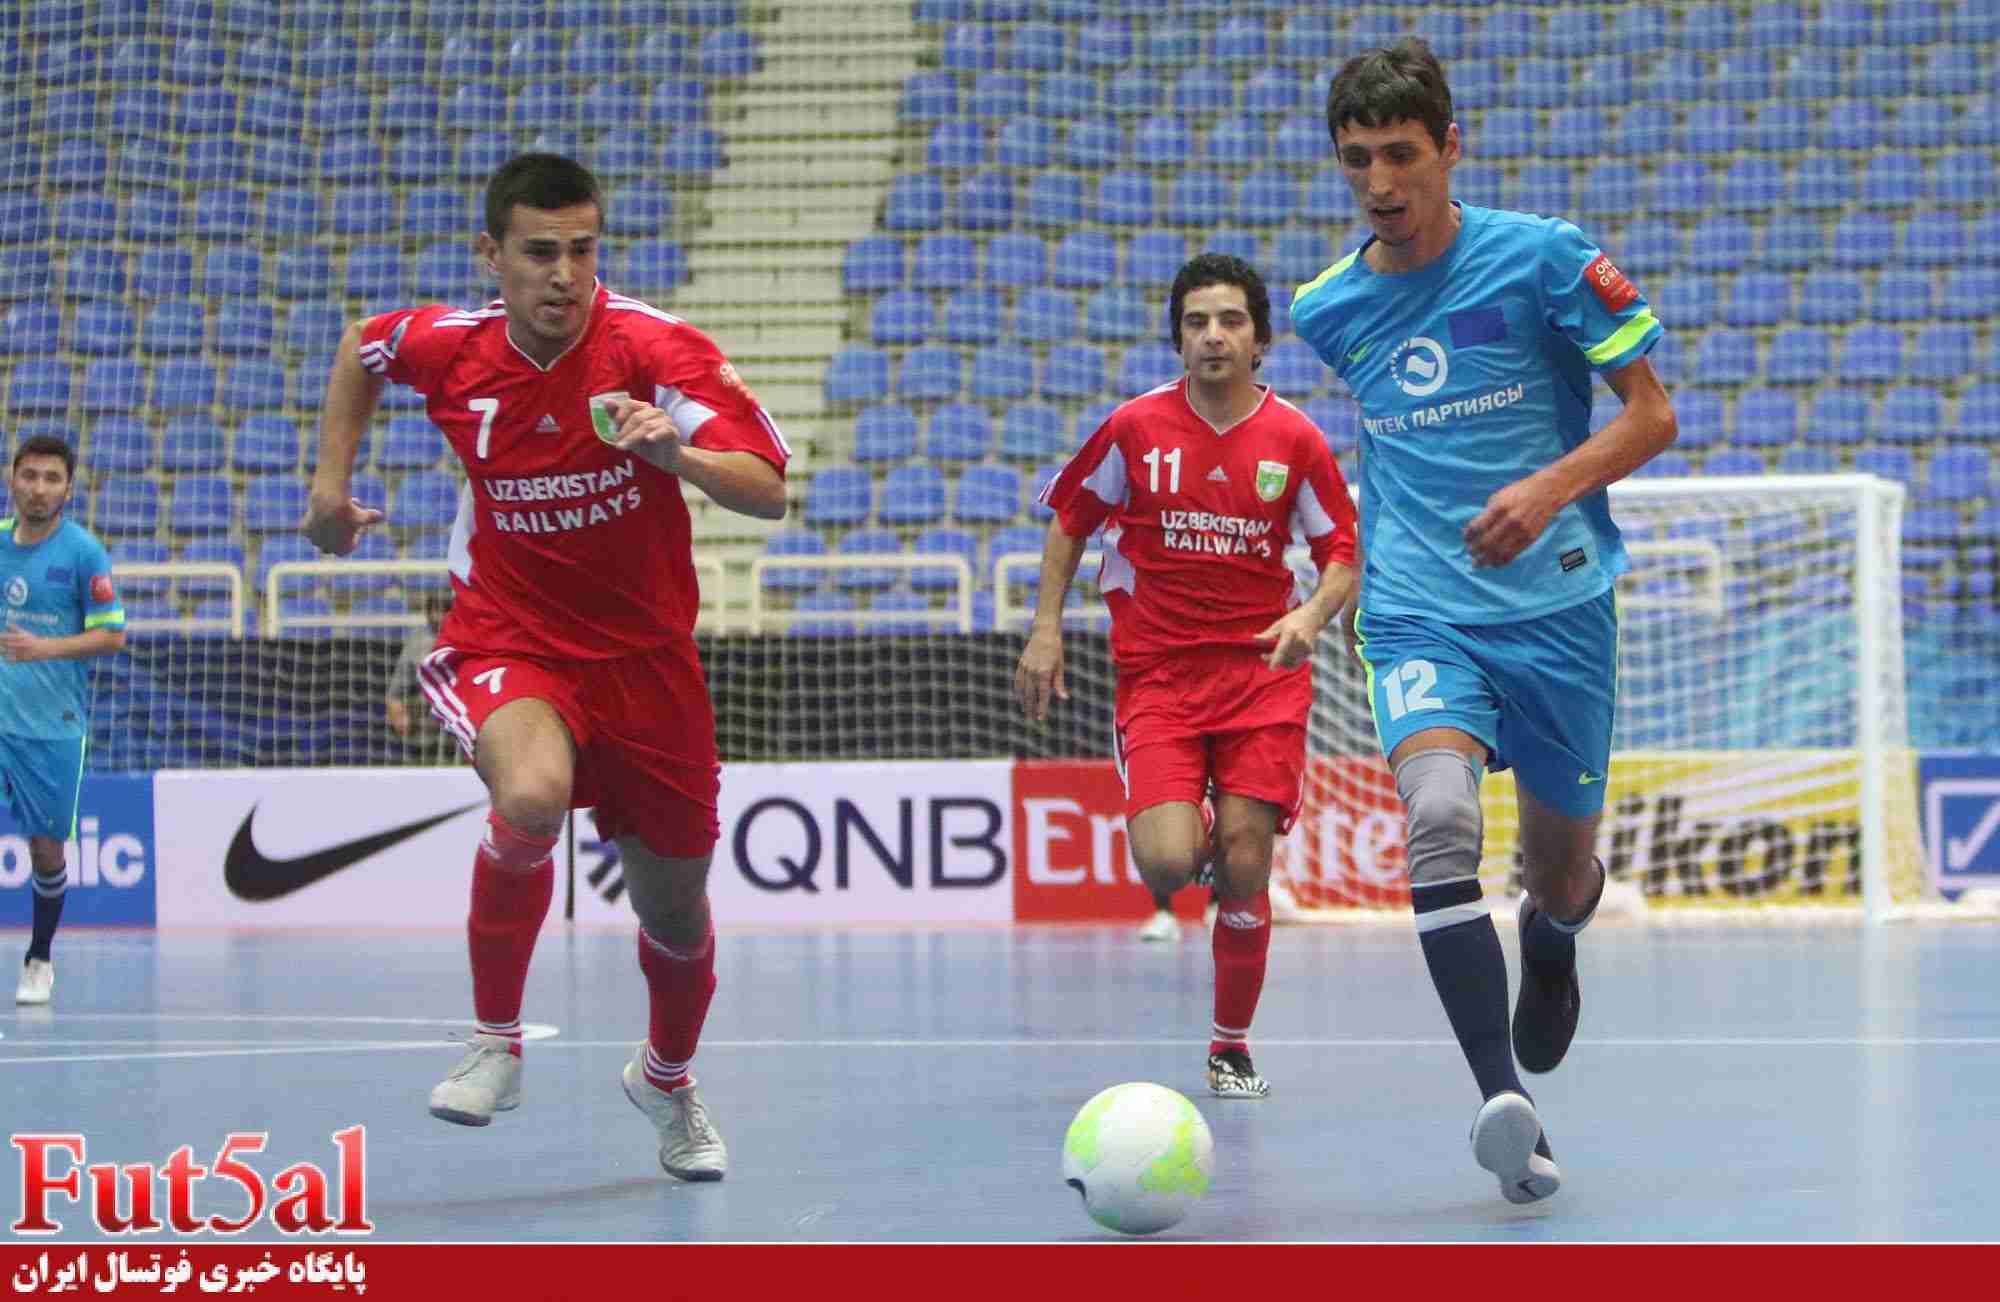 گزارش تصویری اختصاصی/بازی تیم های لکوموتیو ازبکستان با امجک قرقیزستان